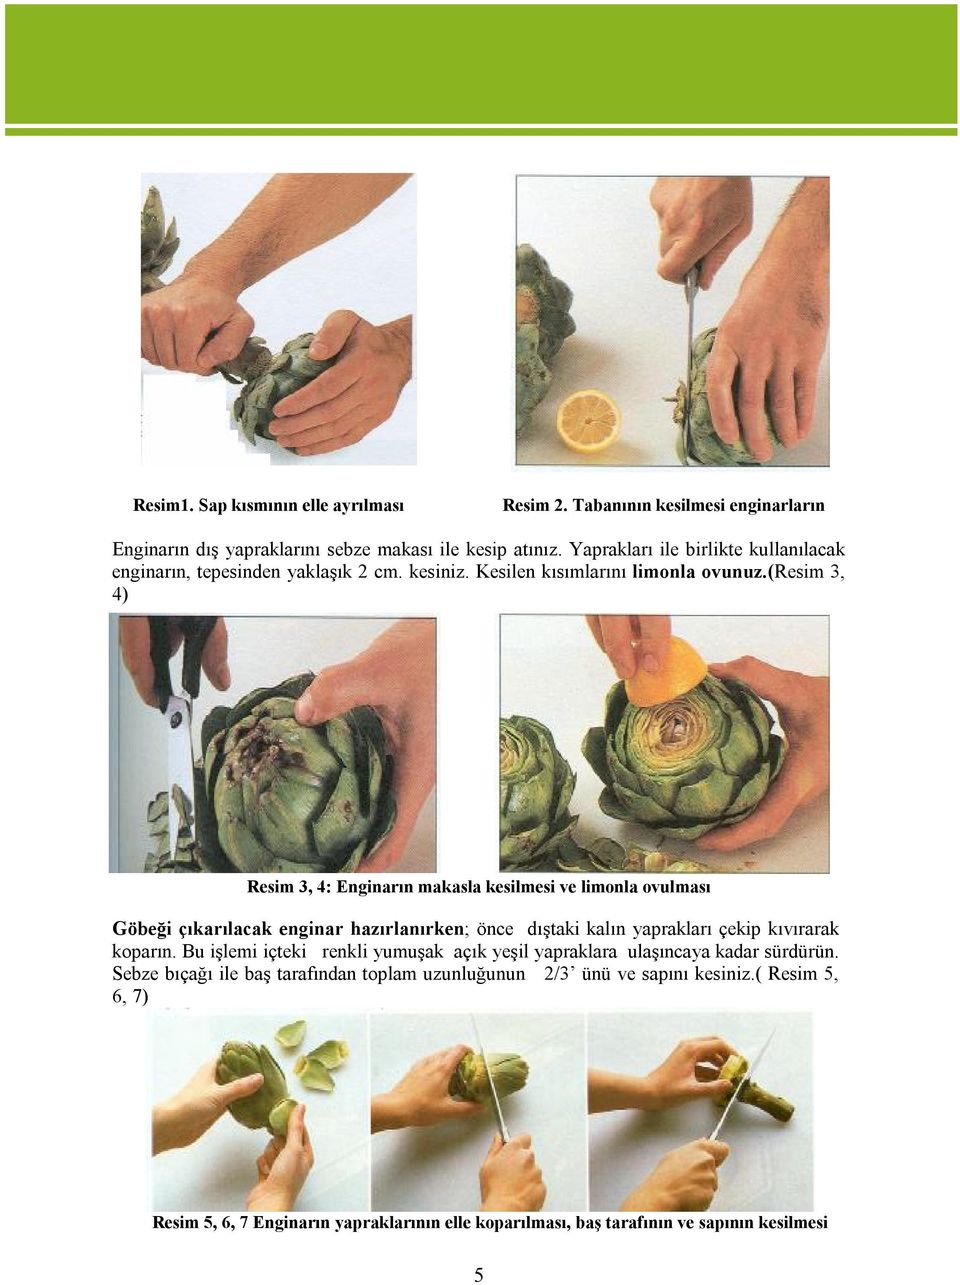 (resim 3, 4) Resim 3, 4: Enginarın makasla kesilmesi ve limonla ovulması Göbeği çıkarılacak enginar hazırlanırken; önce dıştaki kalın yaprakları çekip kıvırarak koparın.